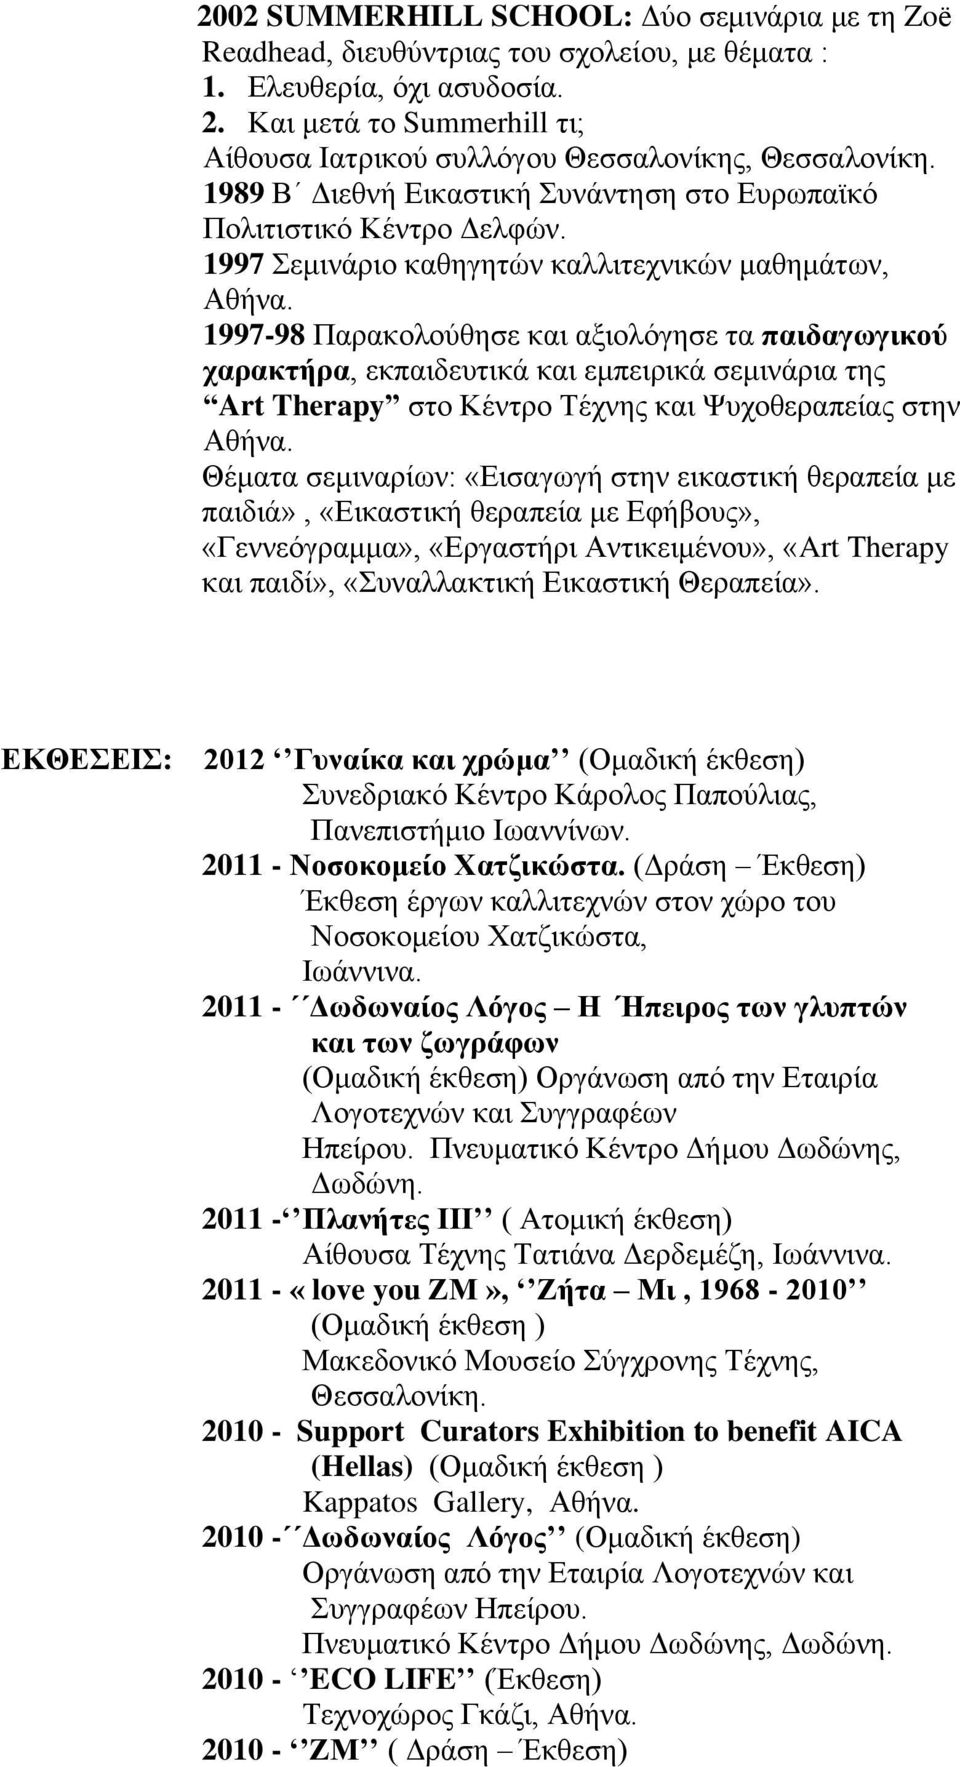 1997 Σεμινάριο καθηγητών καλλιτεχνικών μαθημάτων, Αθήνα.